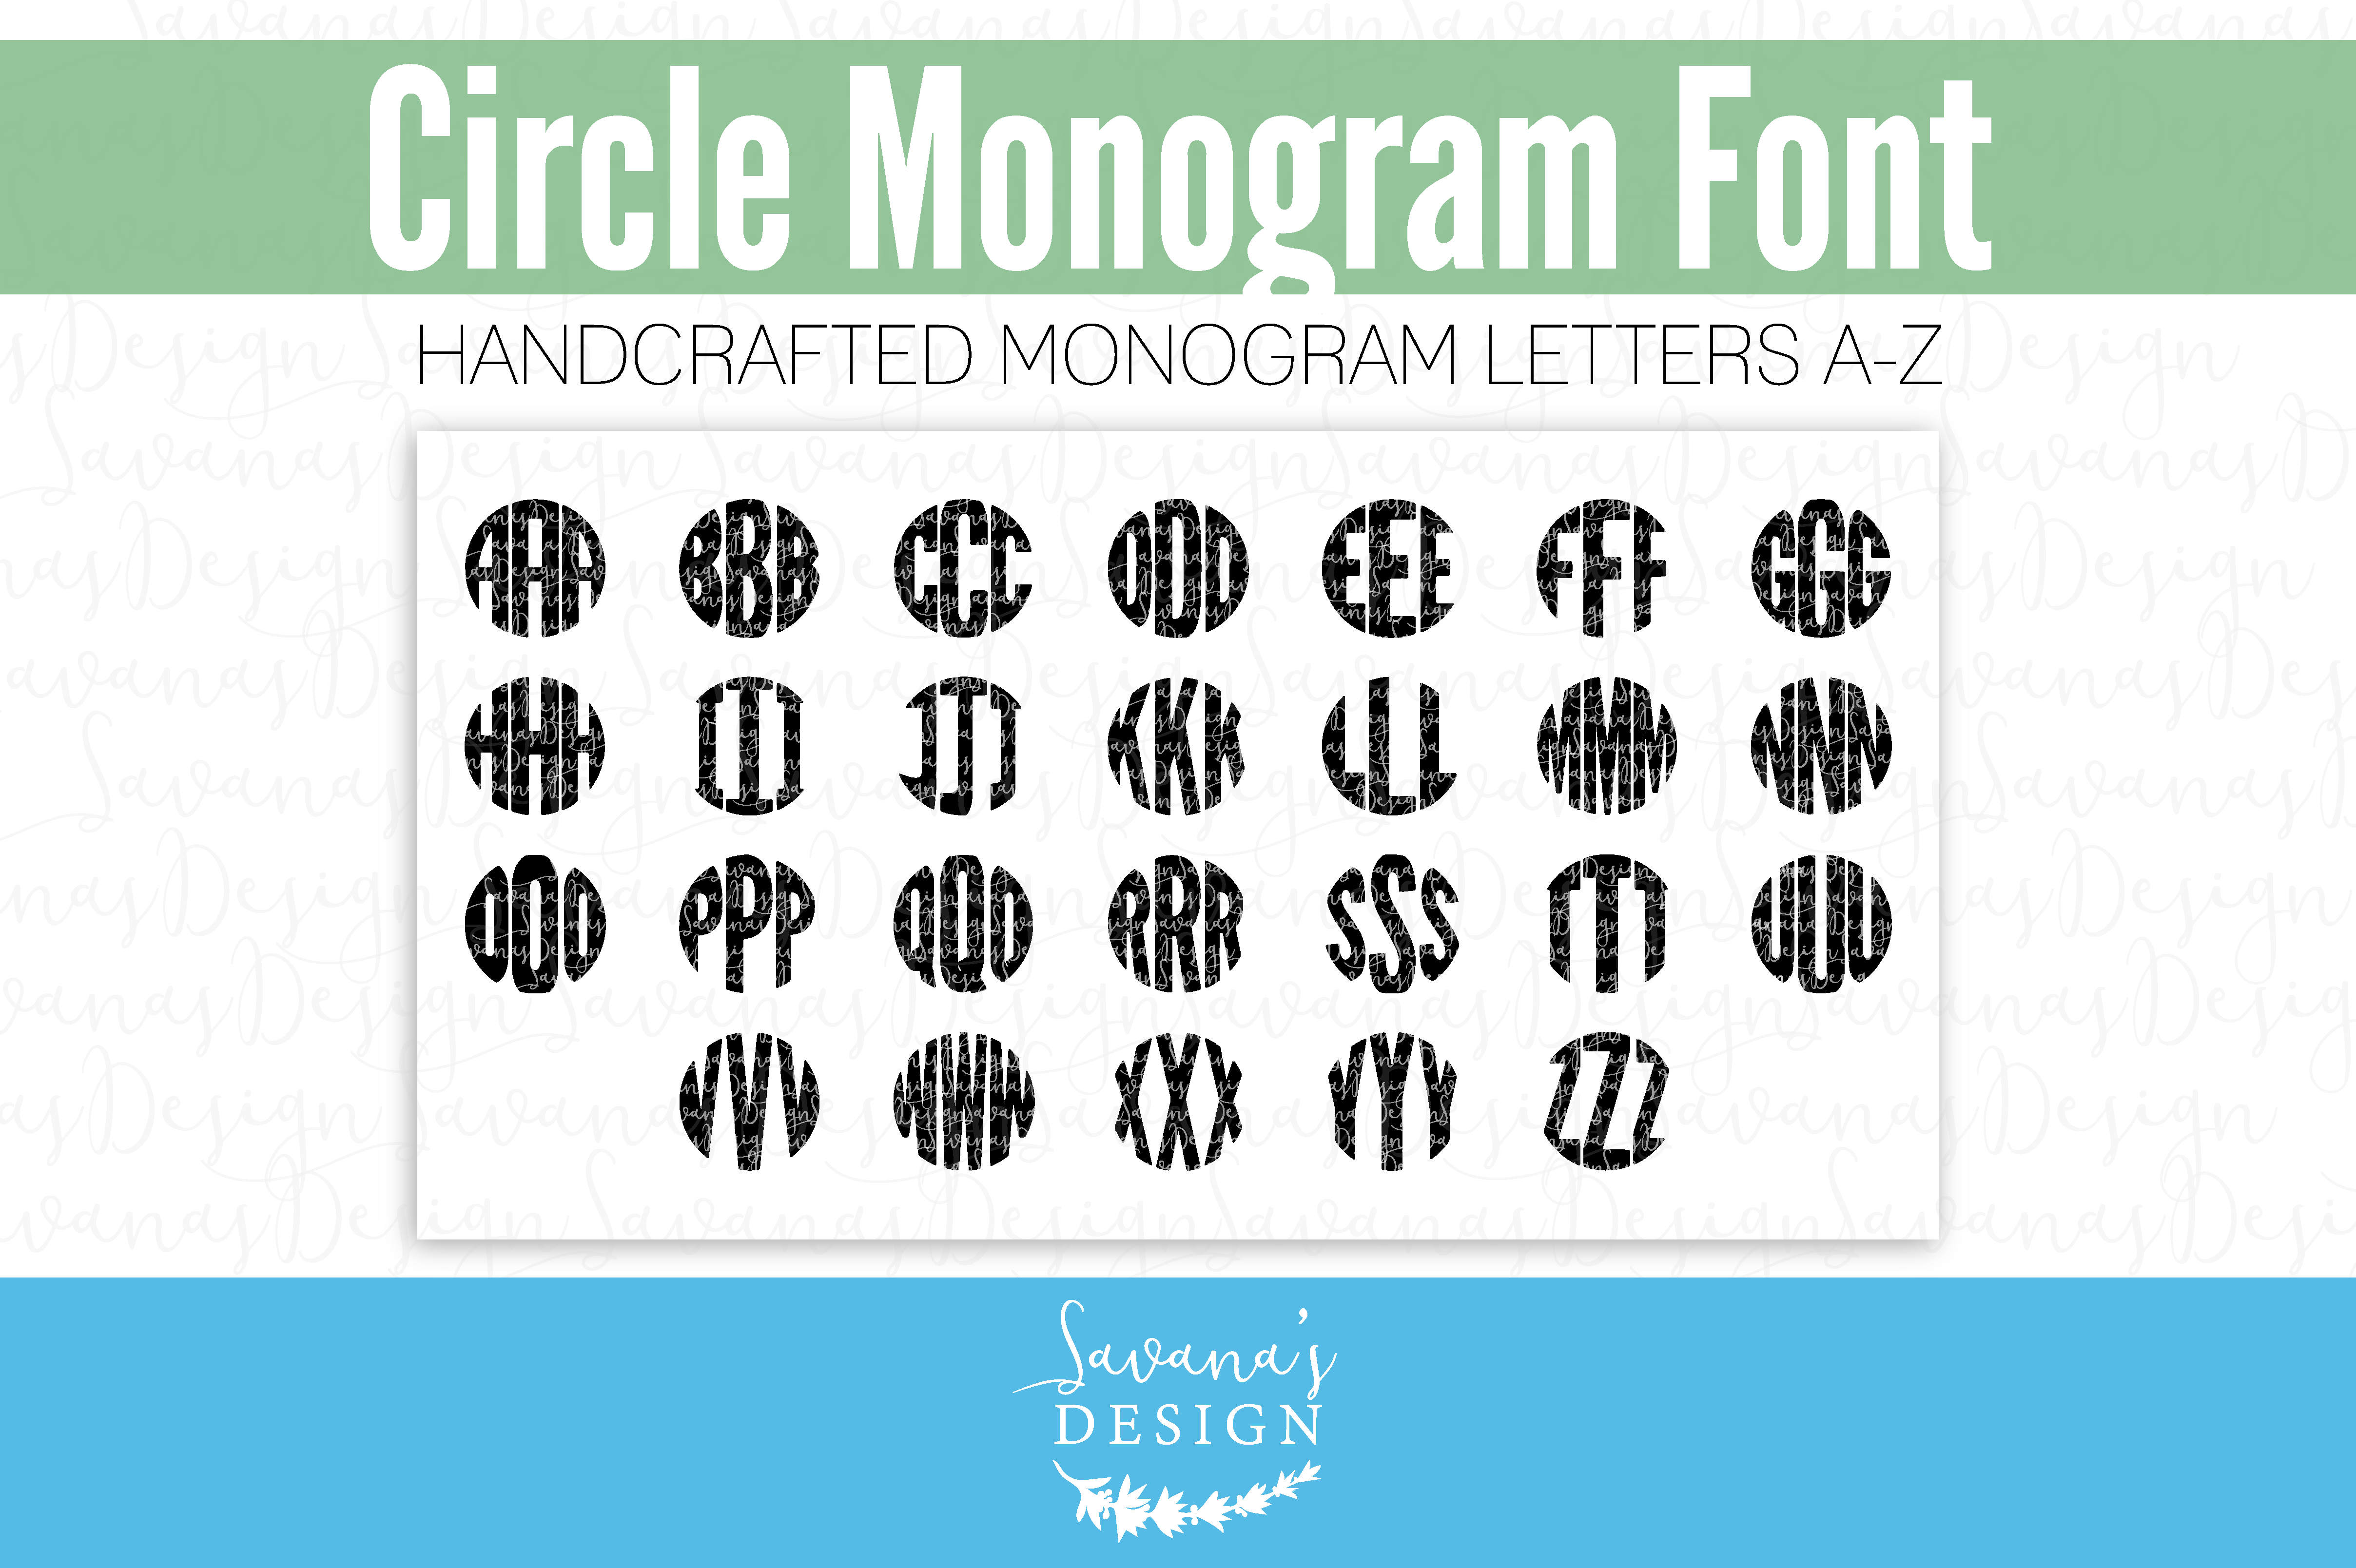 Circle Monogram Circle-monogram-font-cm-01-